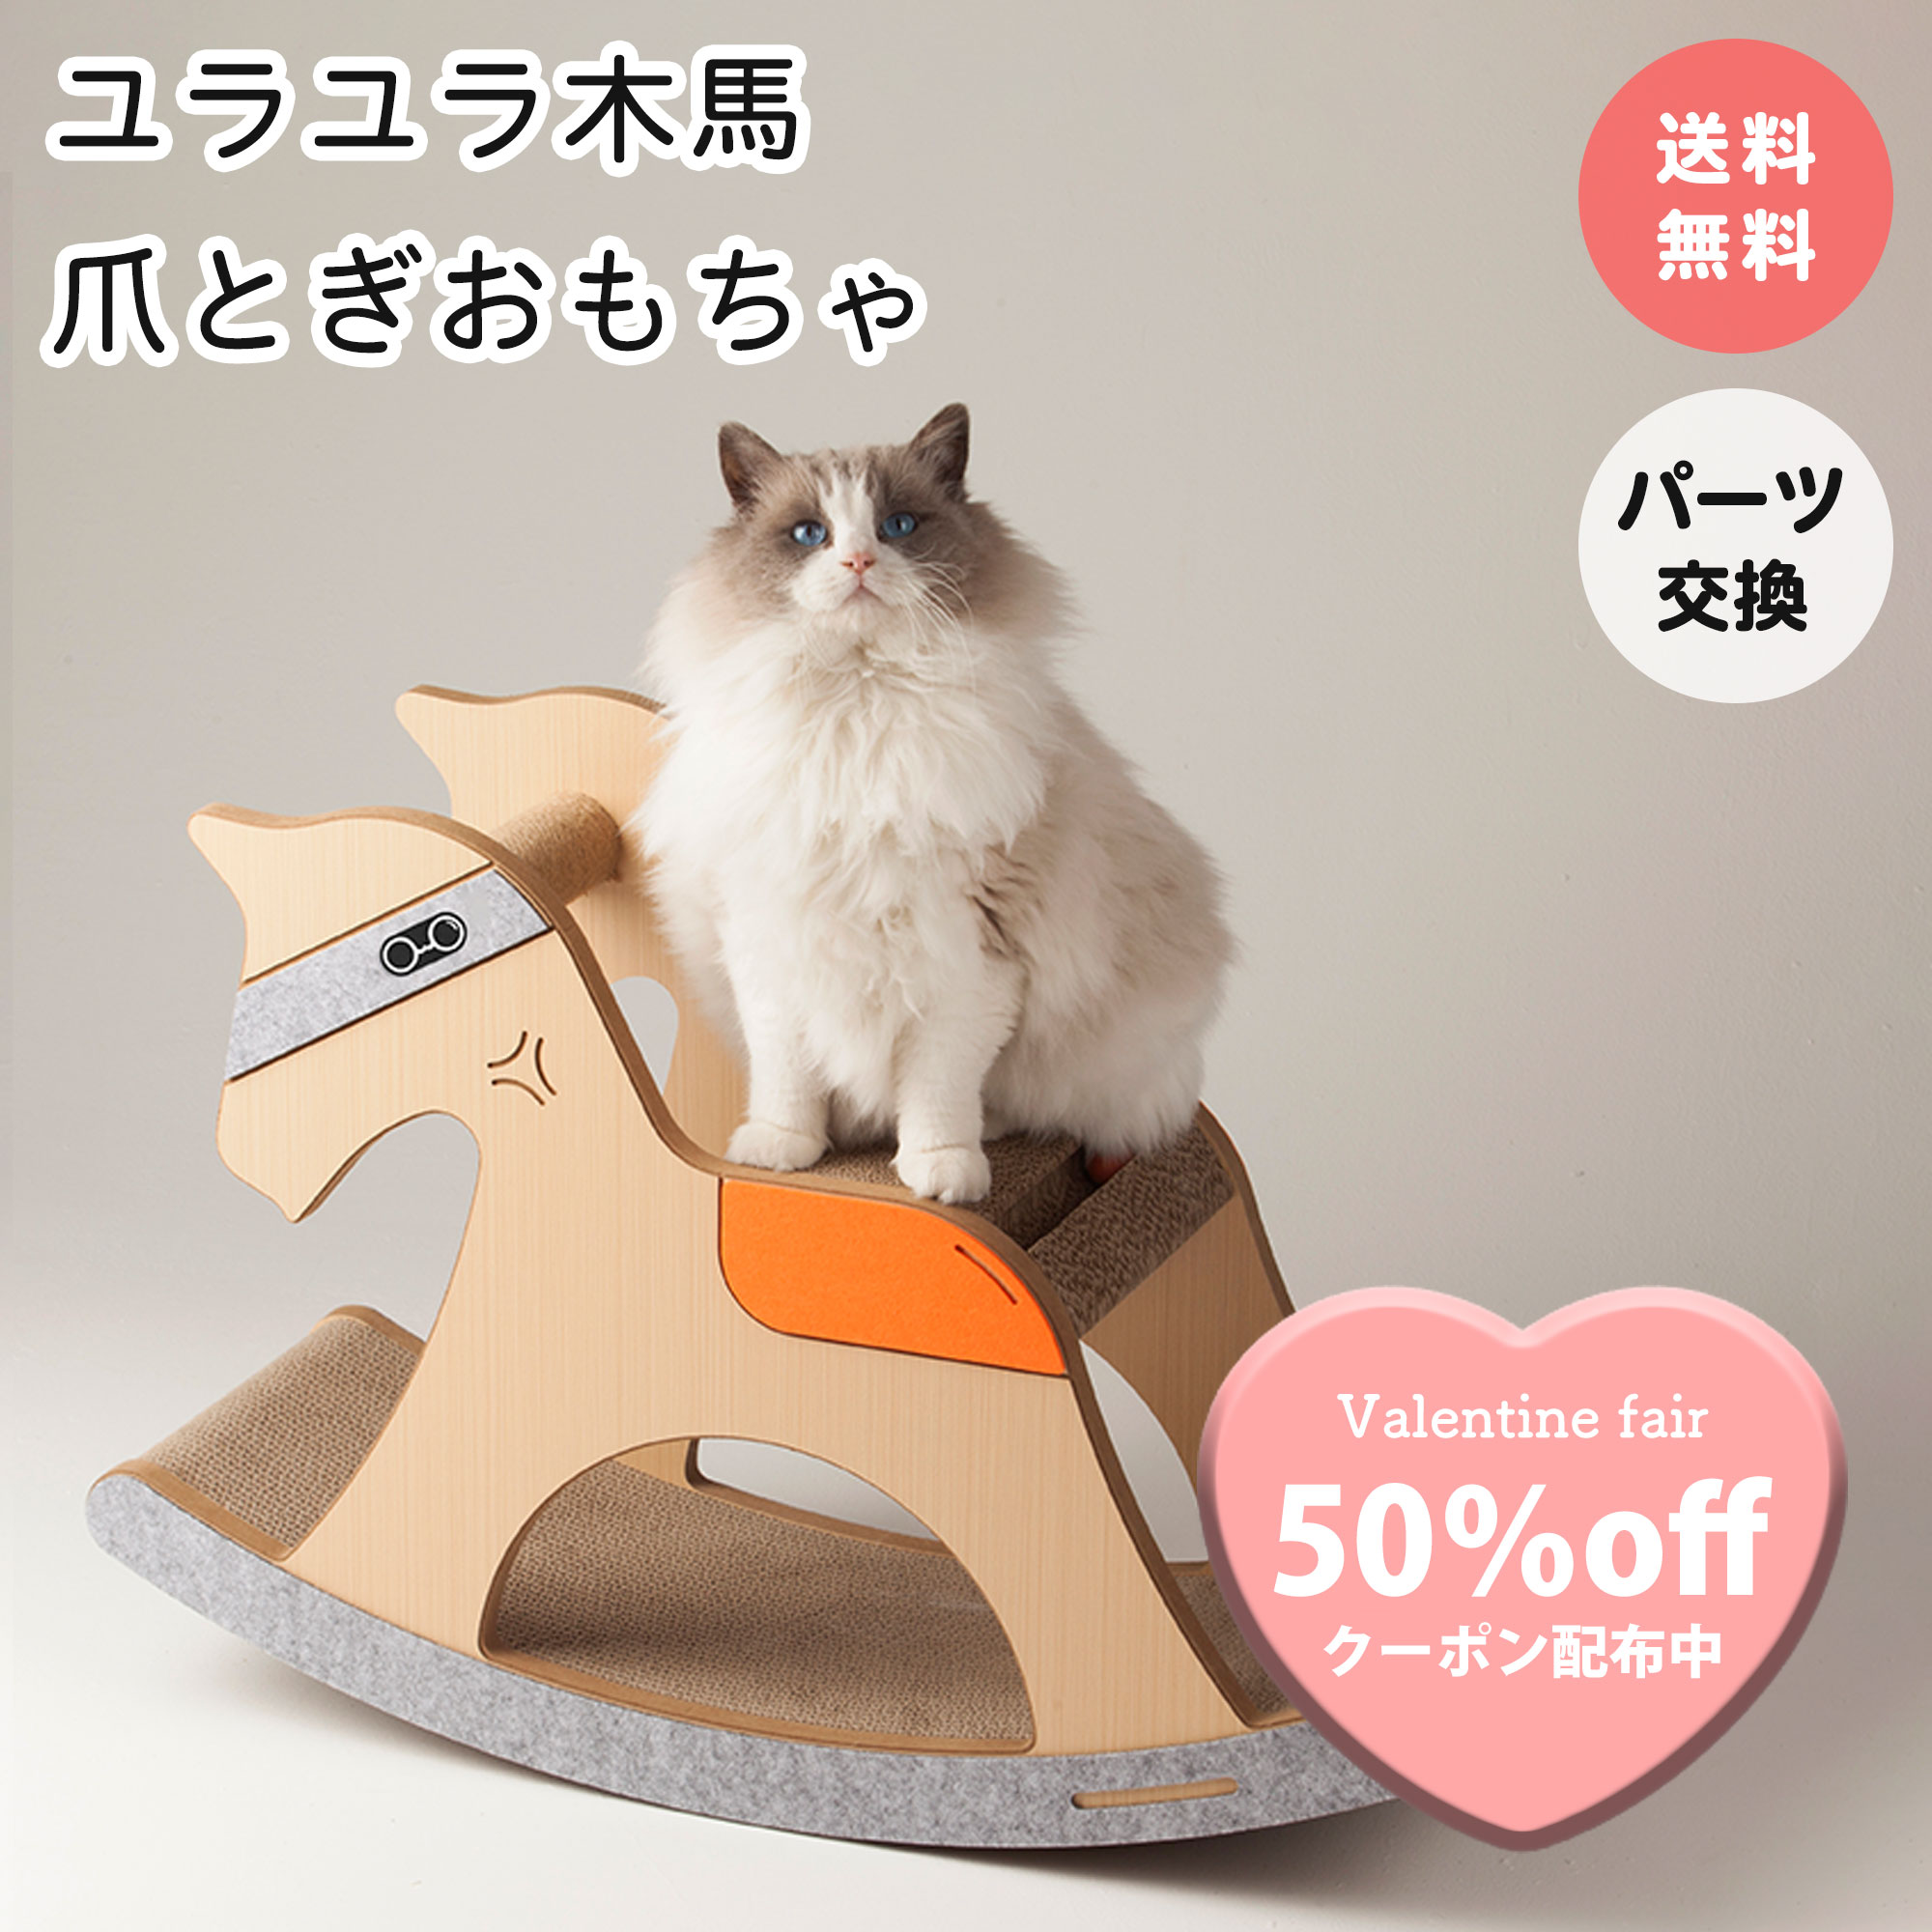 Amazon.co.jp: Achort デジタル ペットスケール 電子ペット体重計 ペットスケール 小型 精密 ポータブル 小型犬/猫/うさぎなど用  生まれたばかりのペット 電池式 最大10 kg : ペット用品